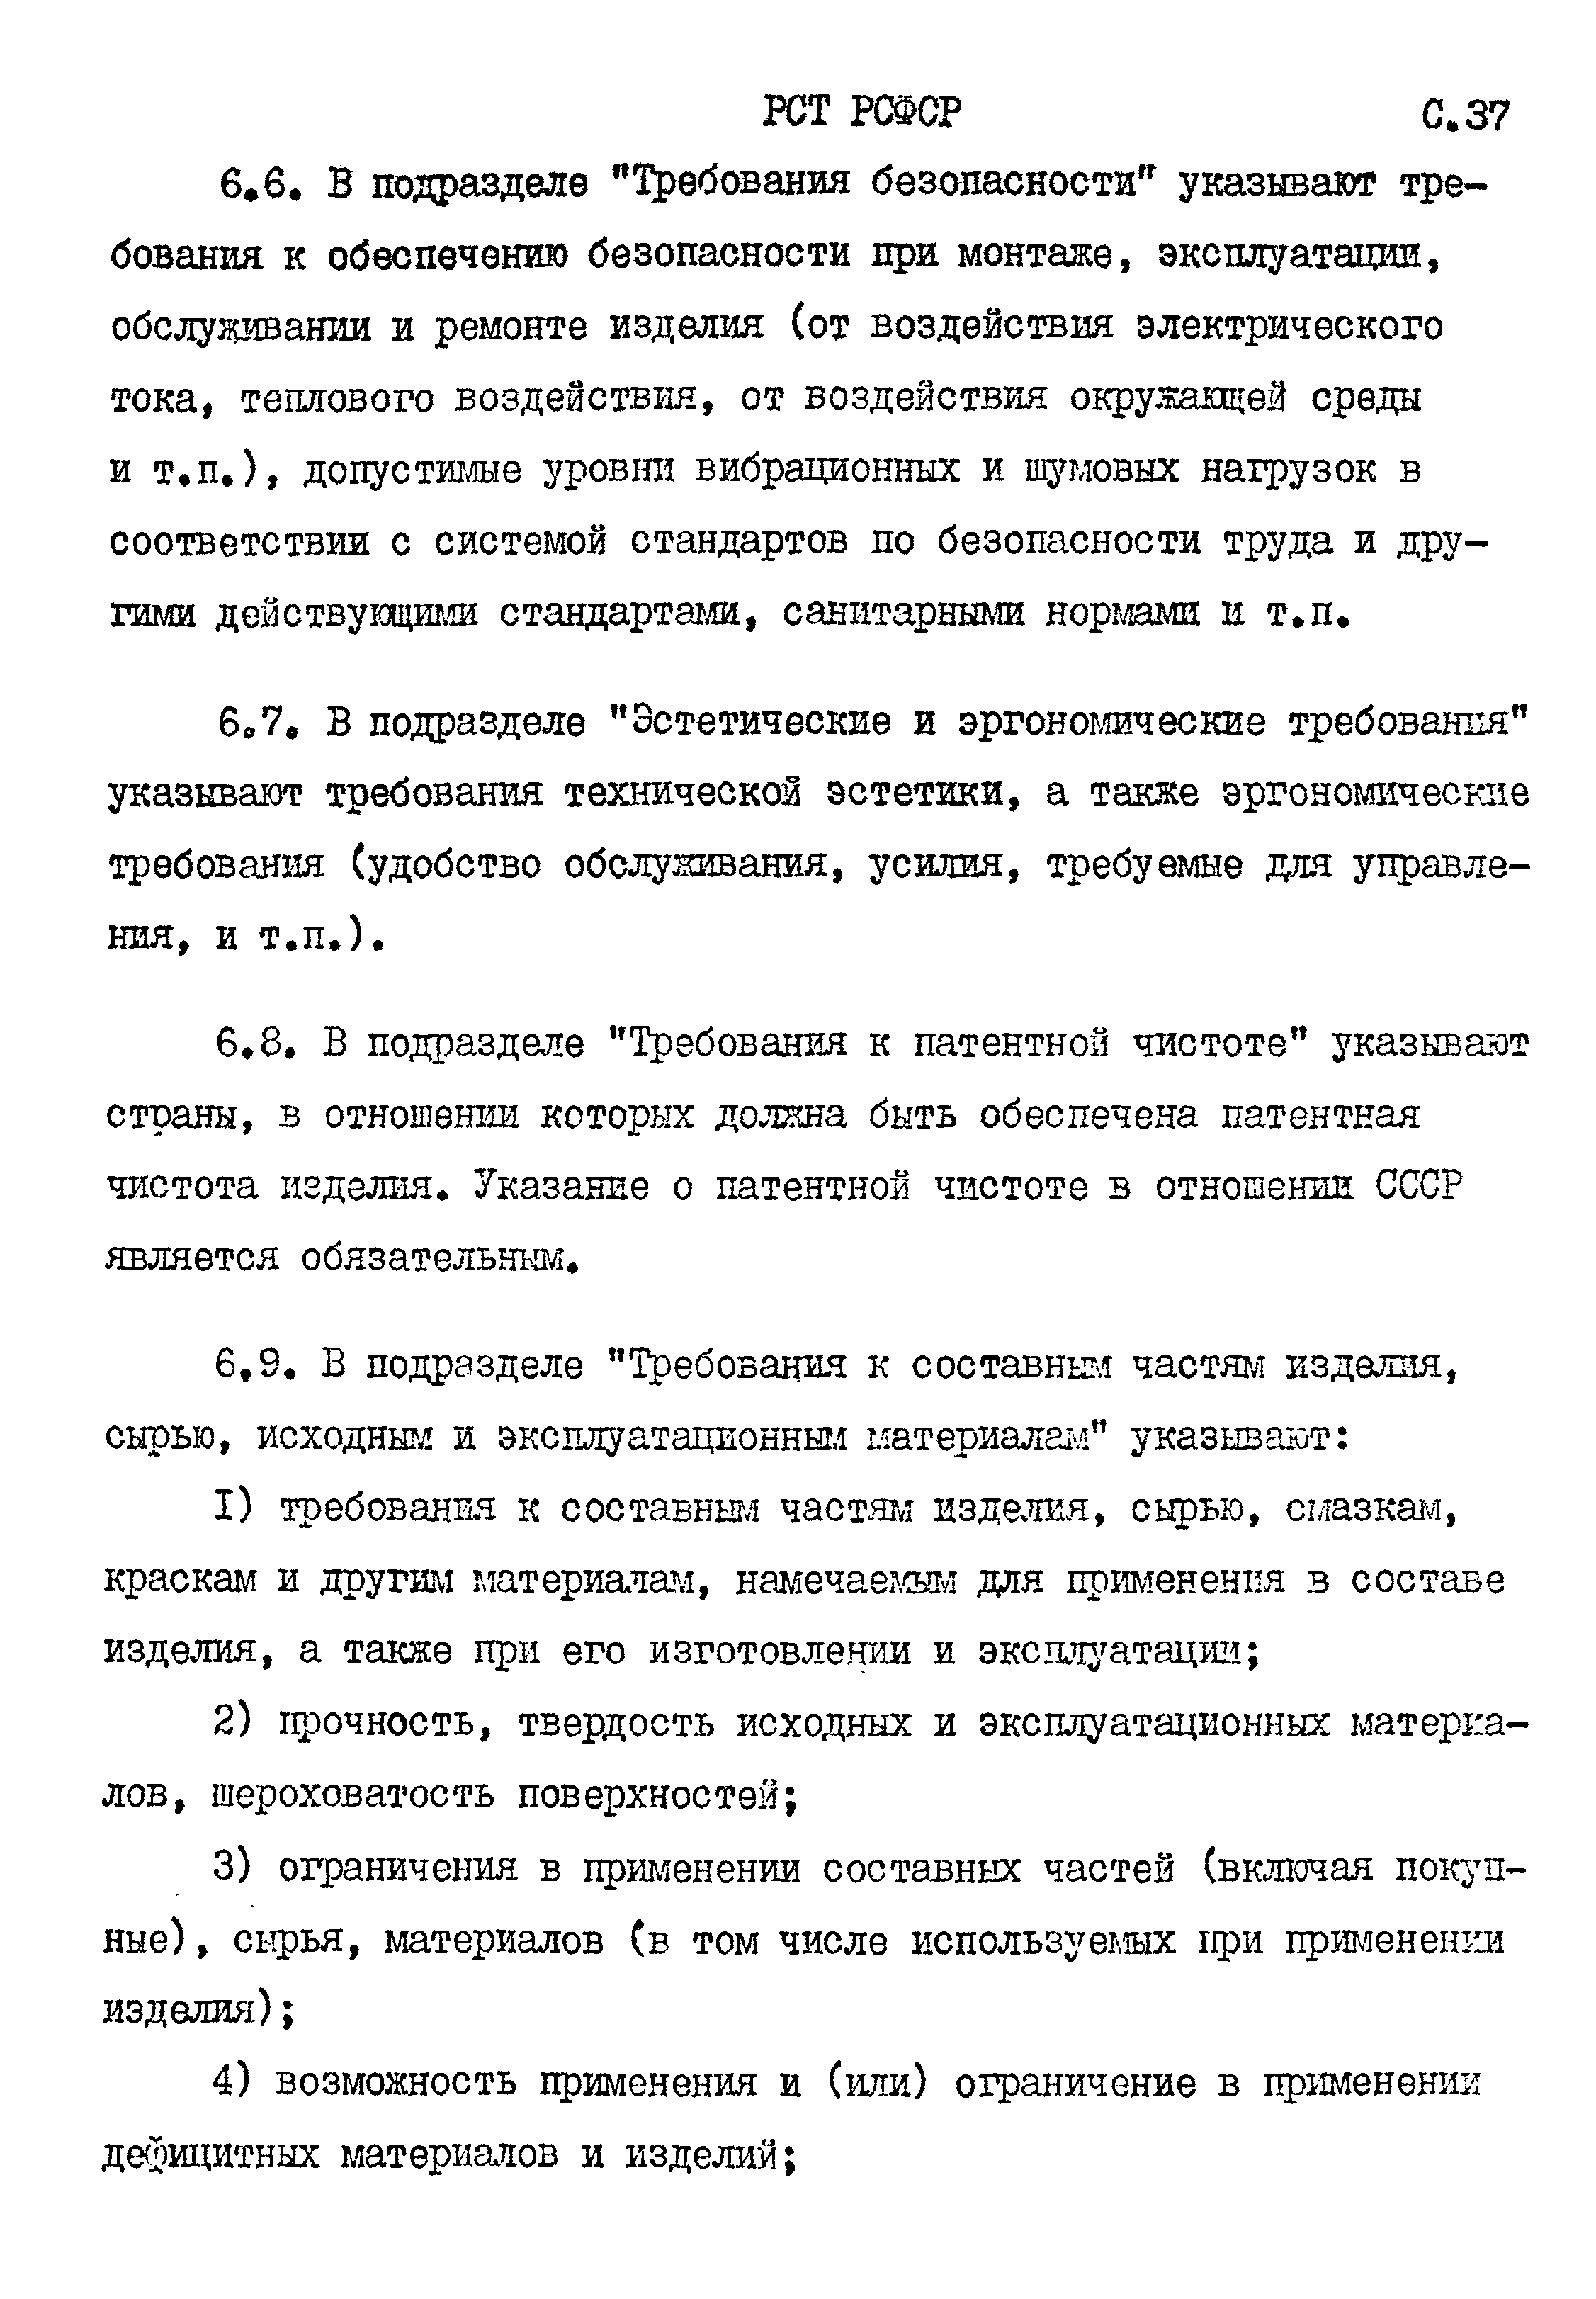 РСТ РСФСР 779-91